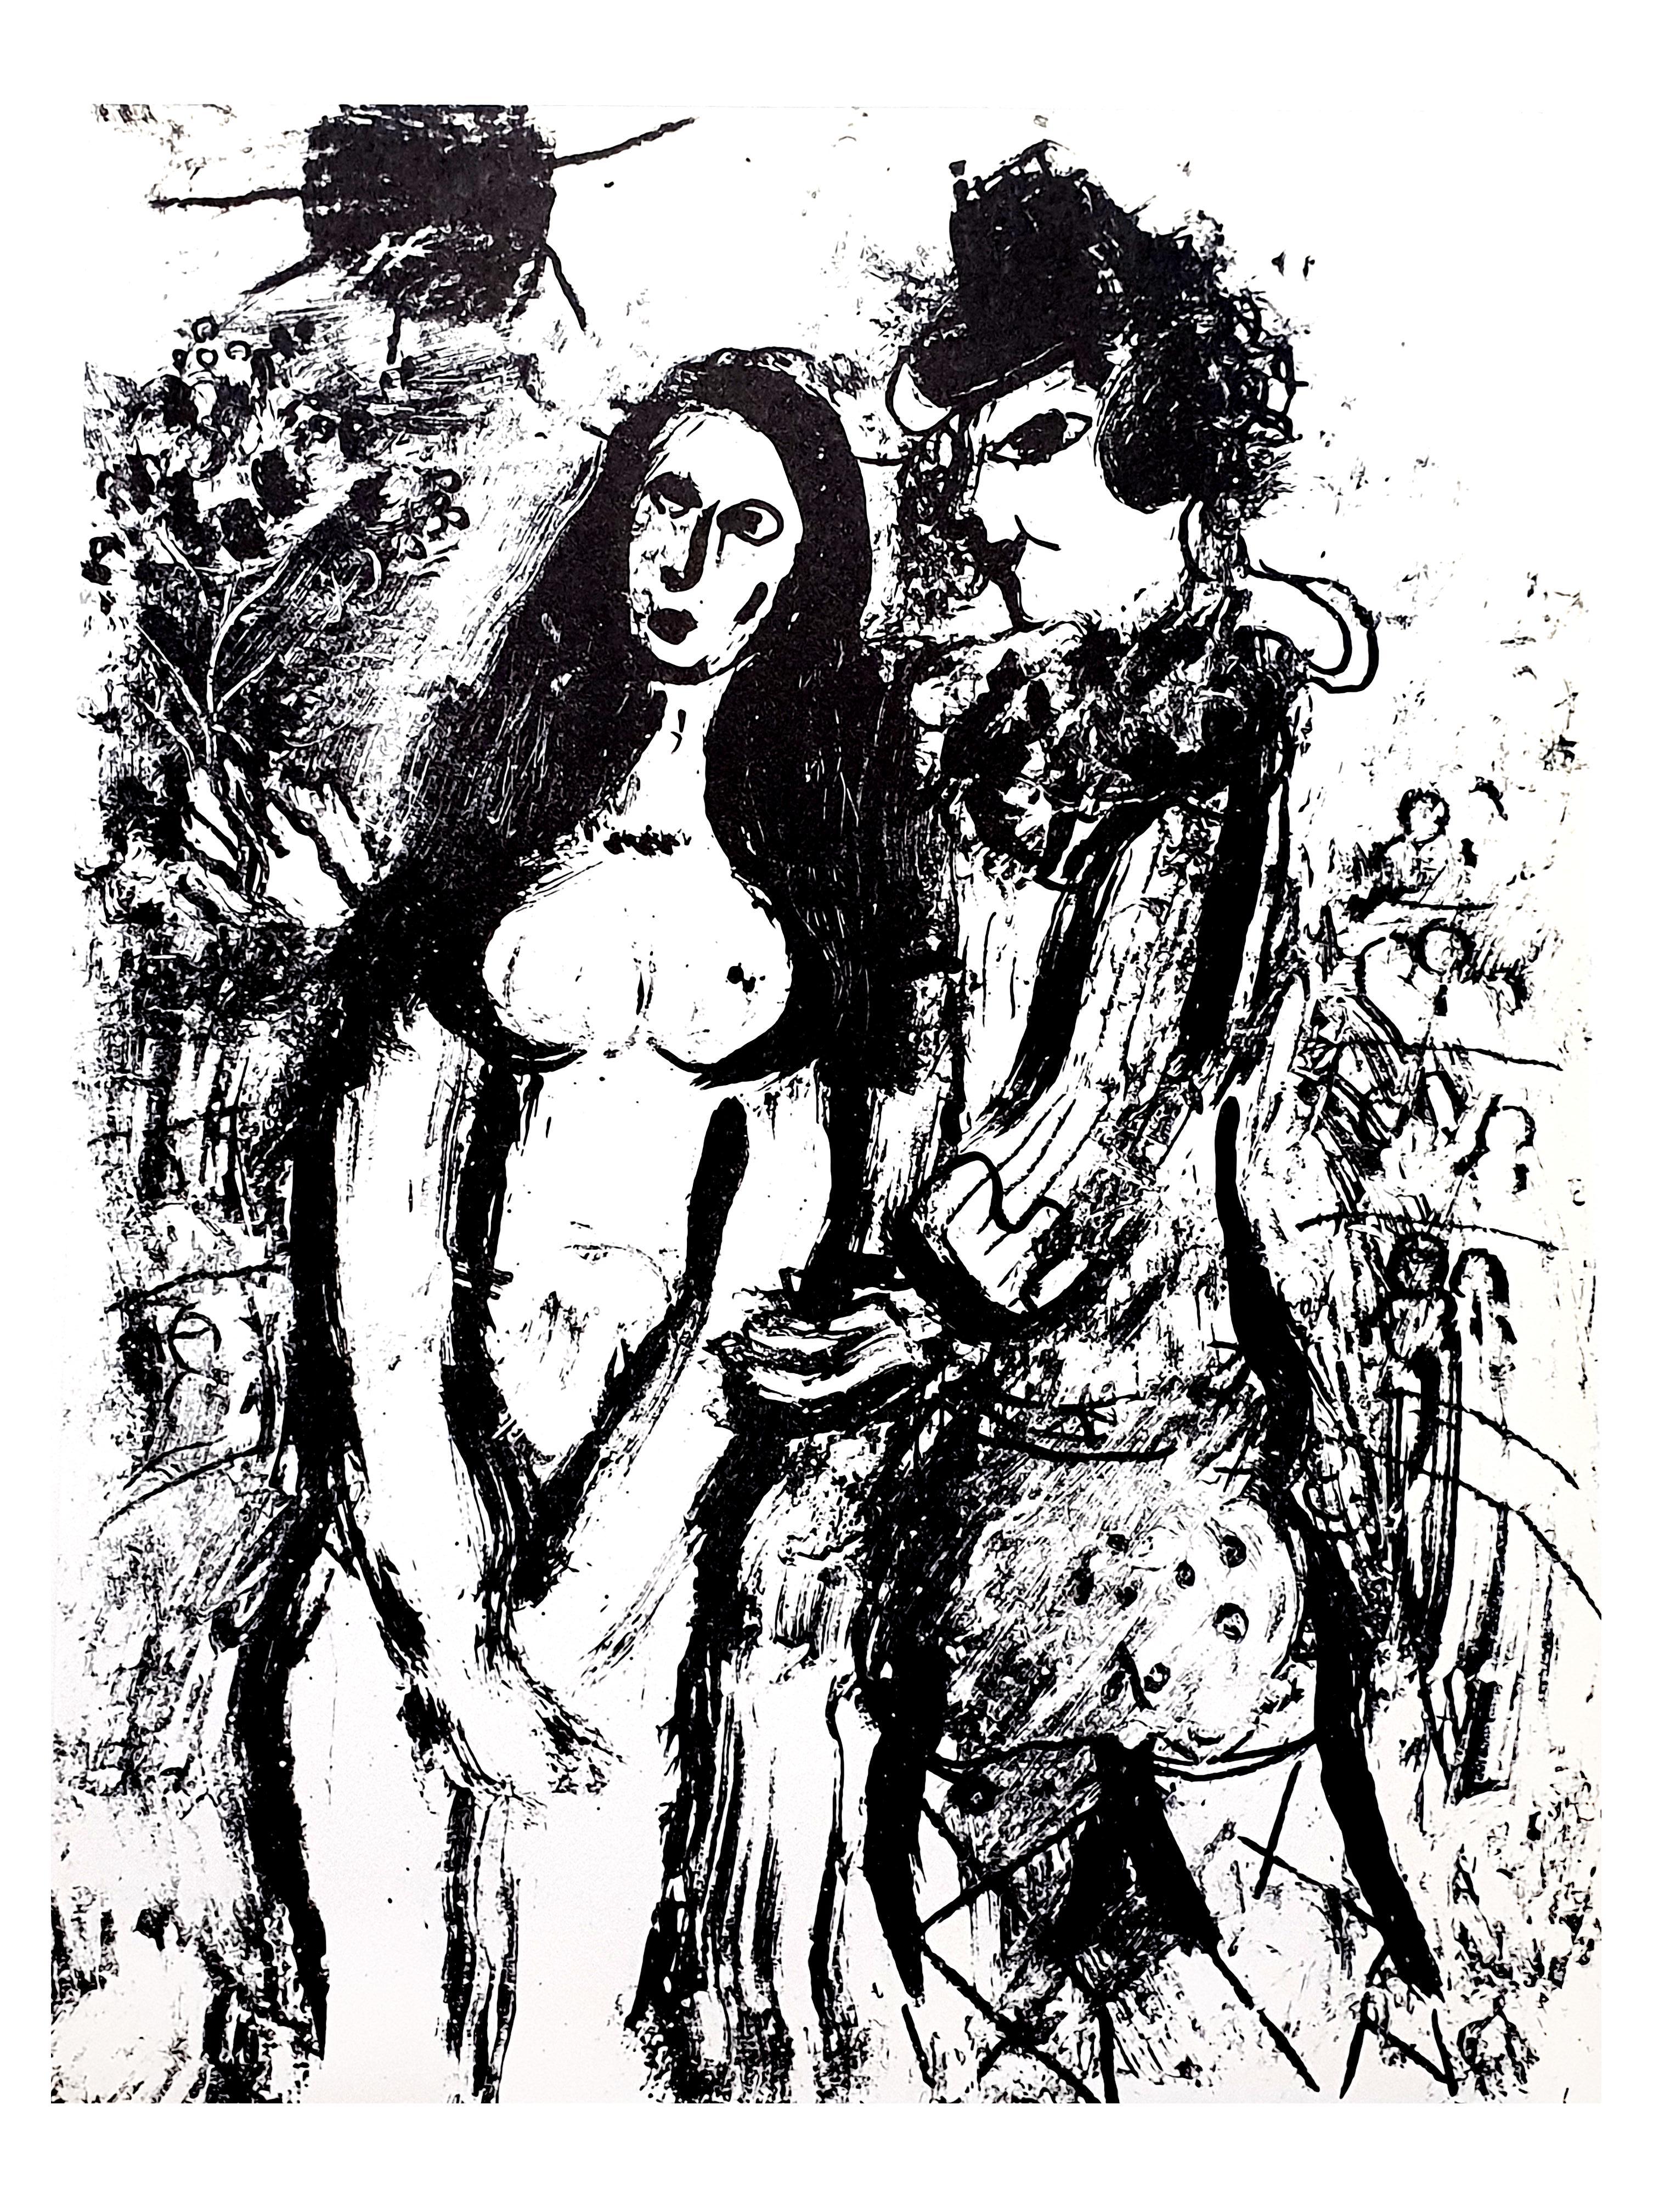 Marc Chagall
Lithographie originale
1963
Dimensions : 32 x 24 cm
Non signé, tel que publié dans "Chagall Lithographe 1957-1962. VOLUME II"
Edition de plusieurs milliers d'exemplaires
Etat : Excellent

Marc Chagall  (né en 1887)

Marc Chagall est né